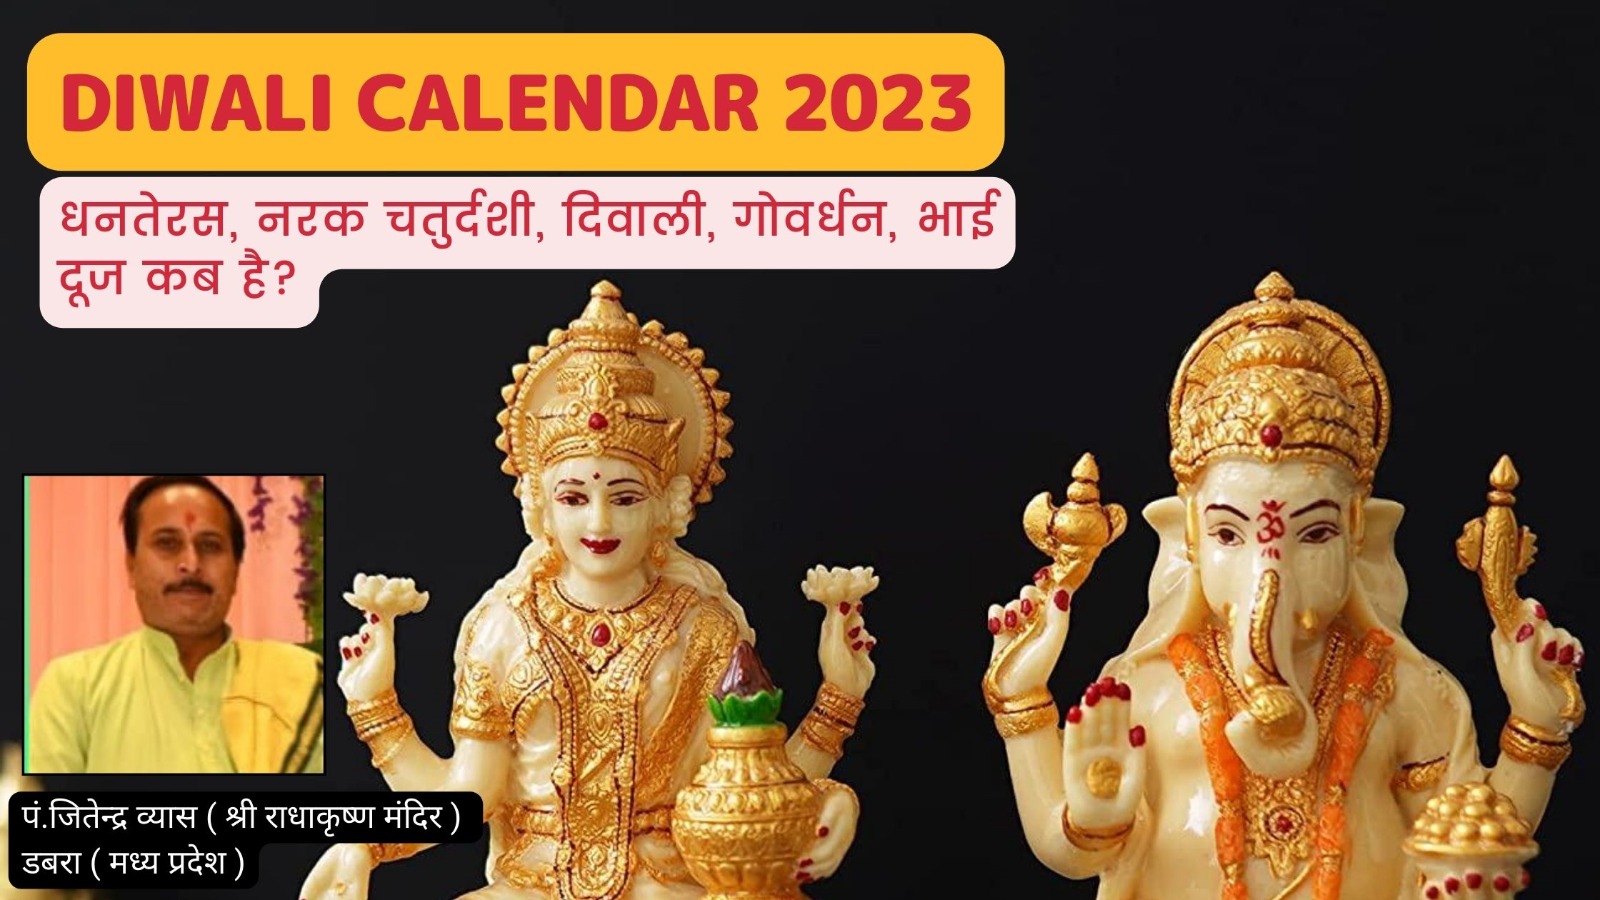 Diwali Calendar 2023 धनतेरस, नरक चतुर्दशी, दिवाली, गोवर्धन पूजा और भाई दूज के तिथियाँ